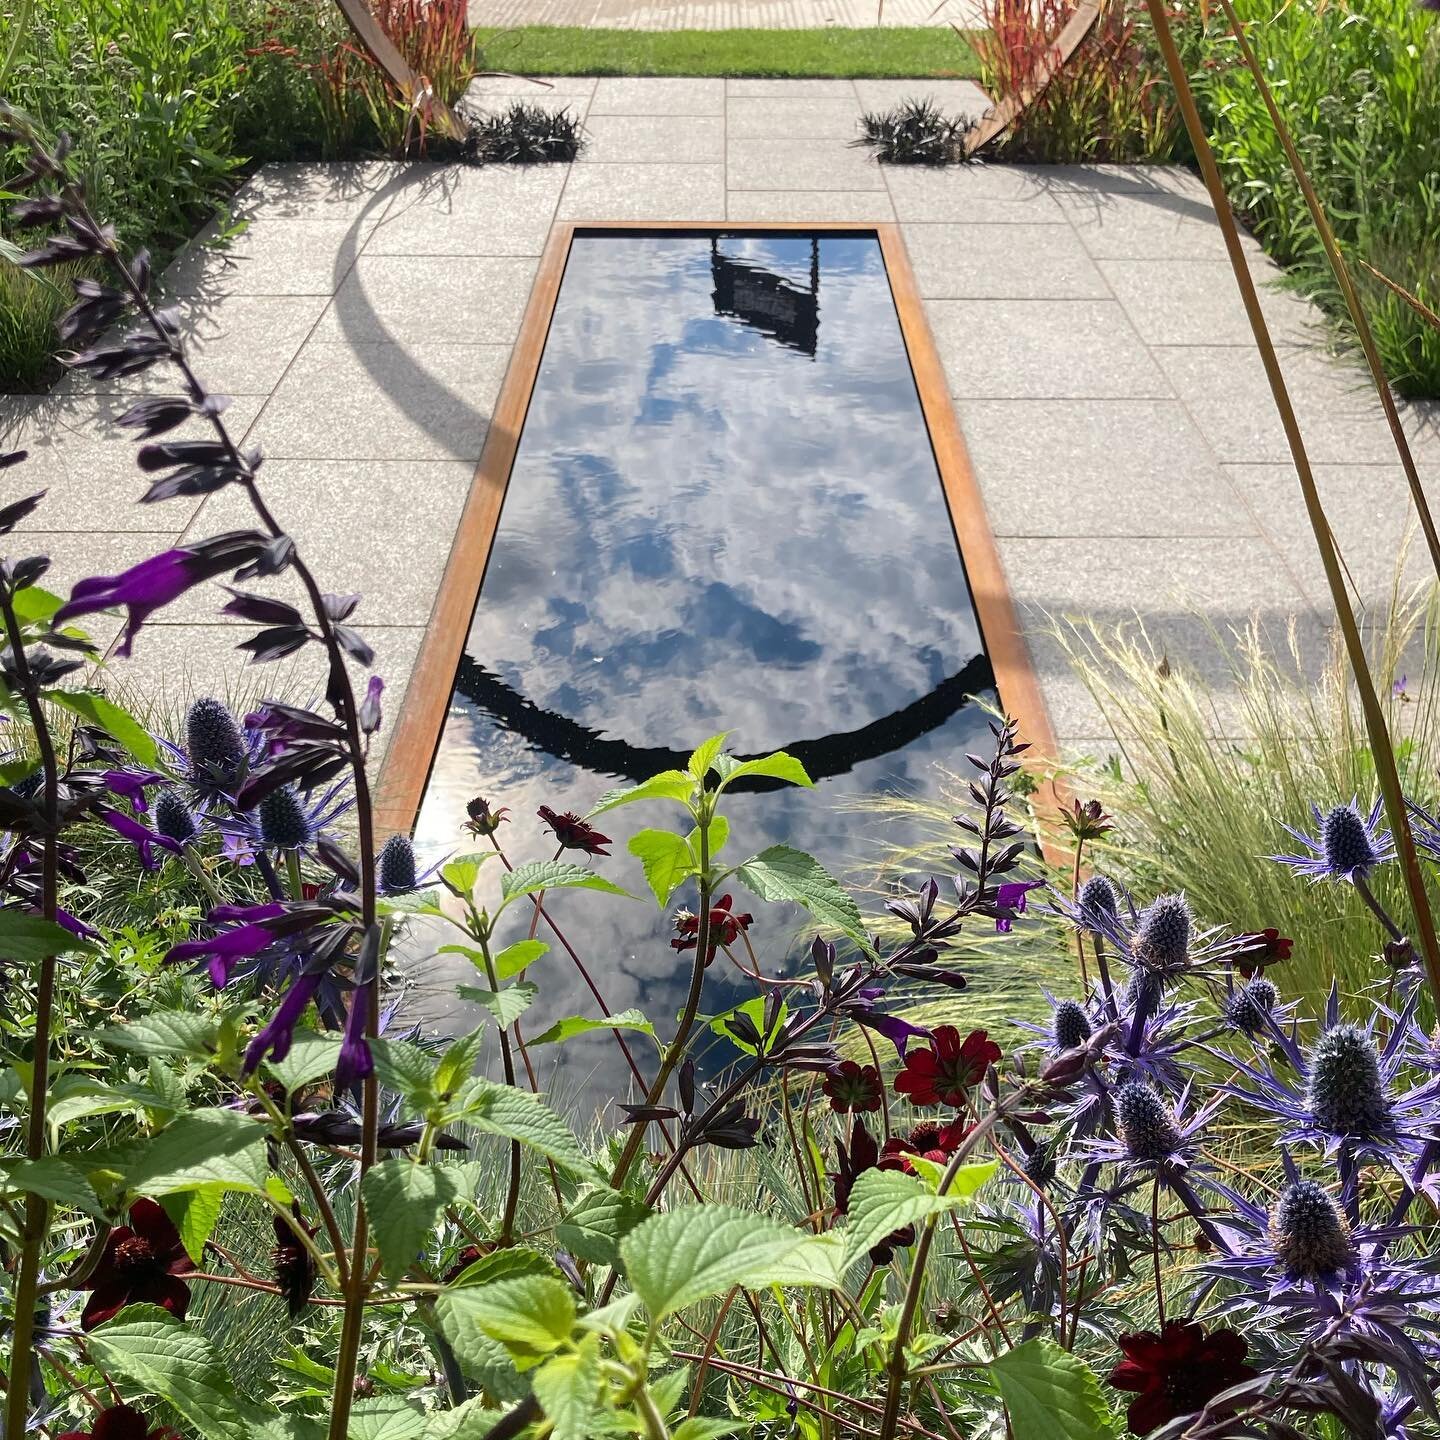 #sunburst @garden_hero @simonprobynsculptor #charliebloom #showgarden #gardendesign #reflectivepool #waterfeature #hamptoncourtflowershow